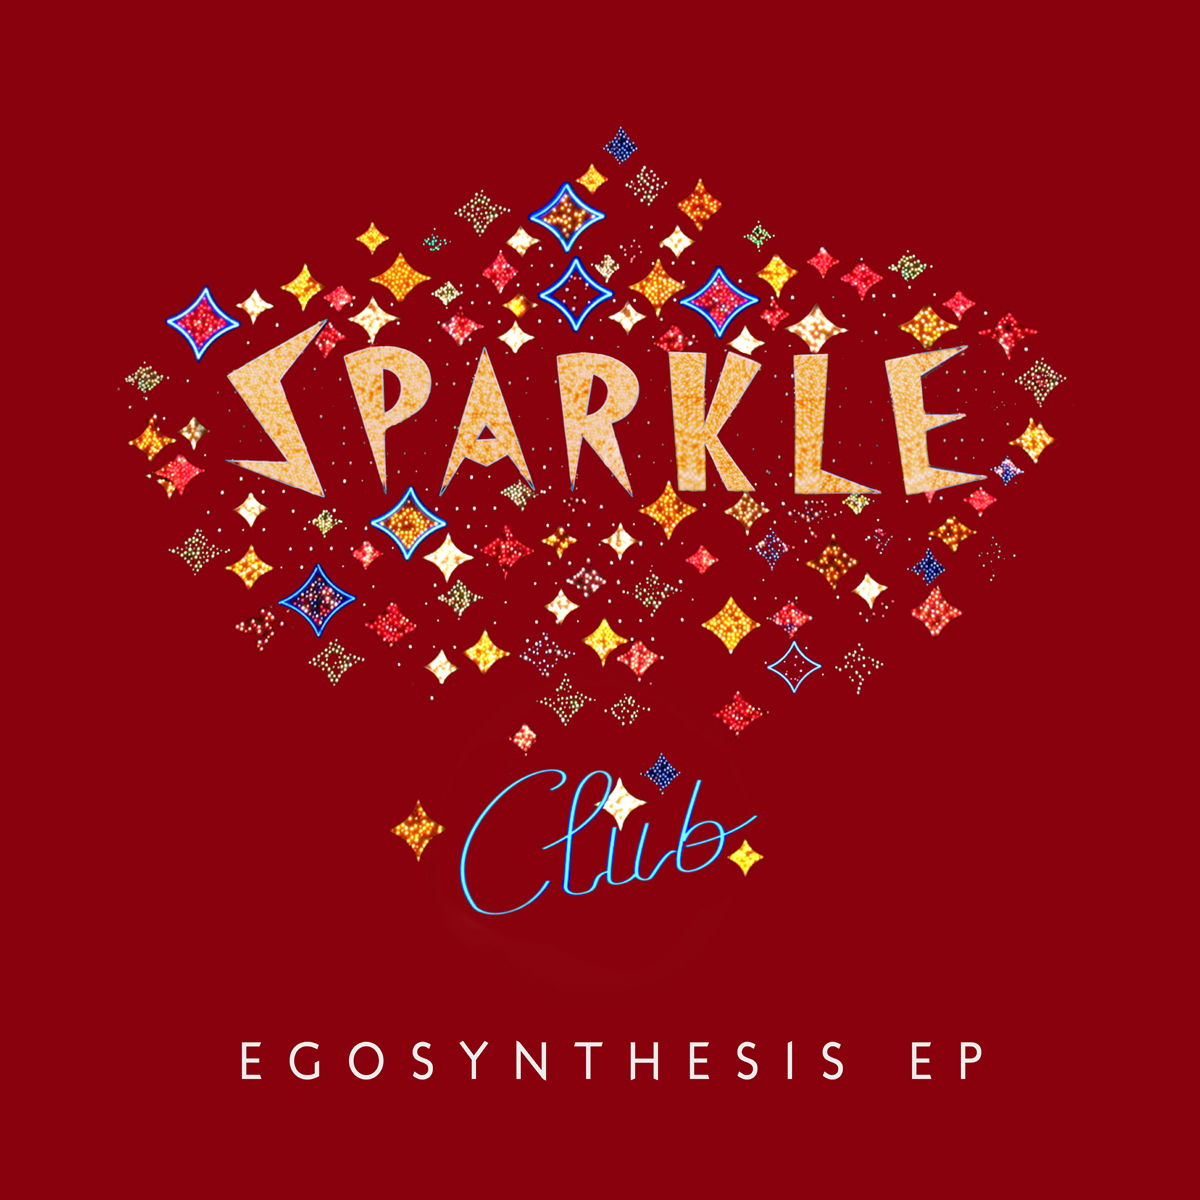 Sparkle Cub - Egosynthesis EP album